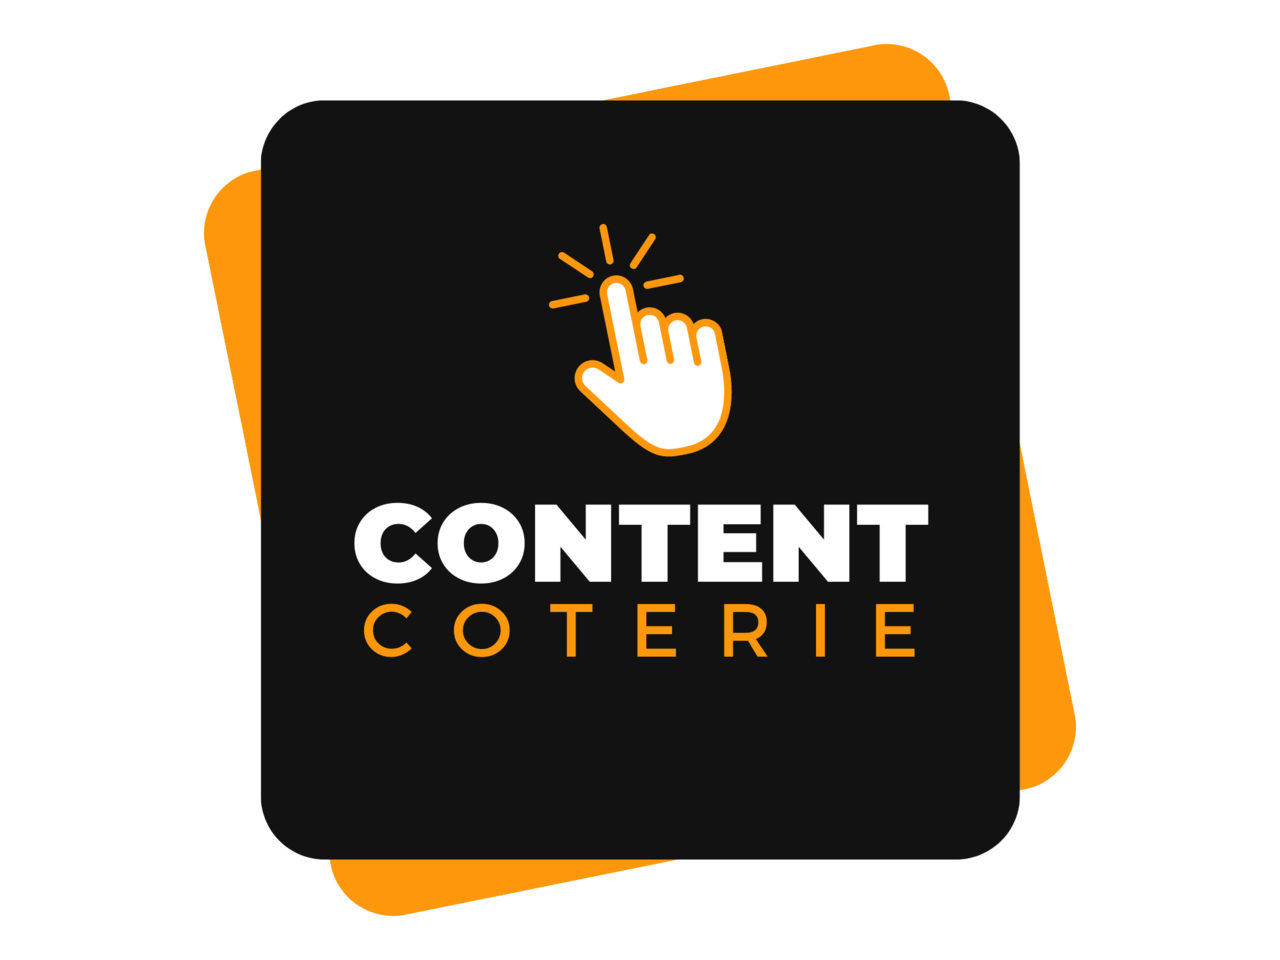 Content Coterie